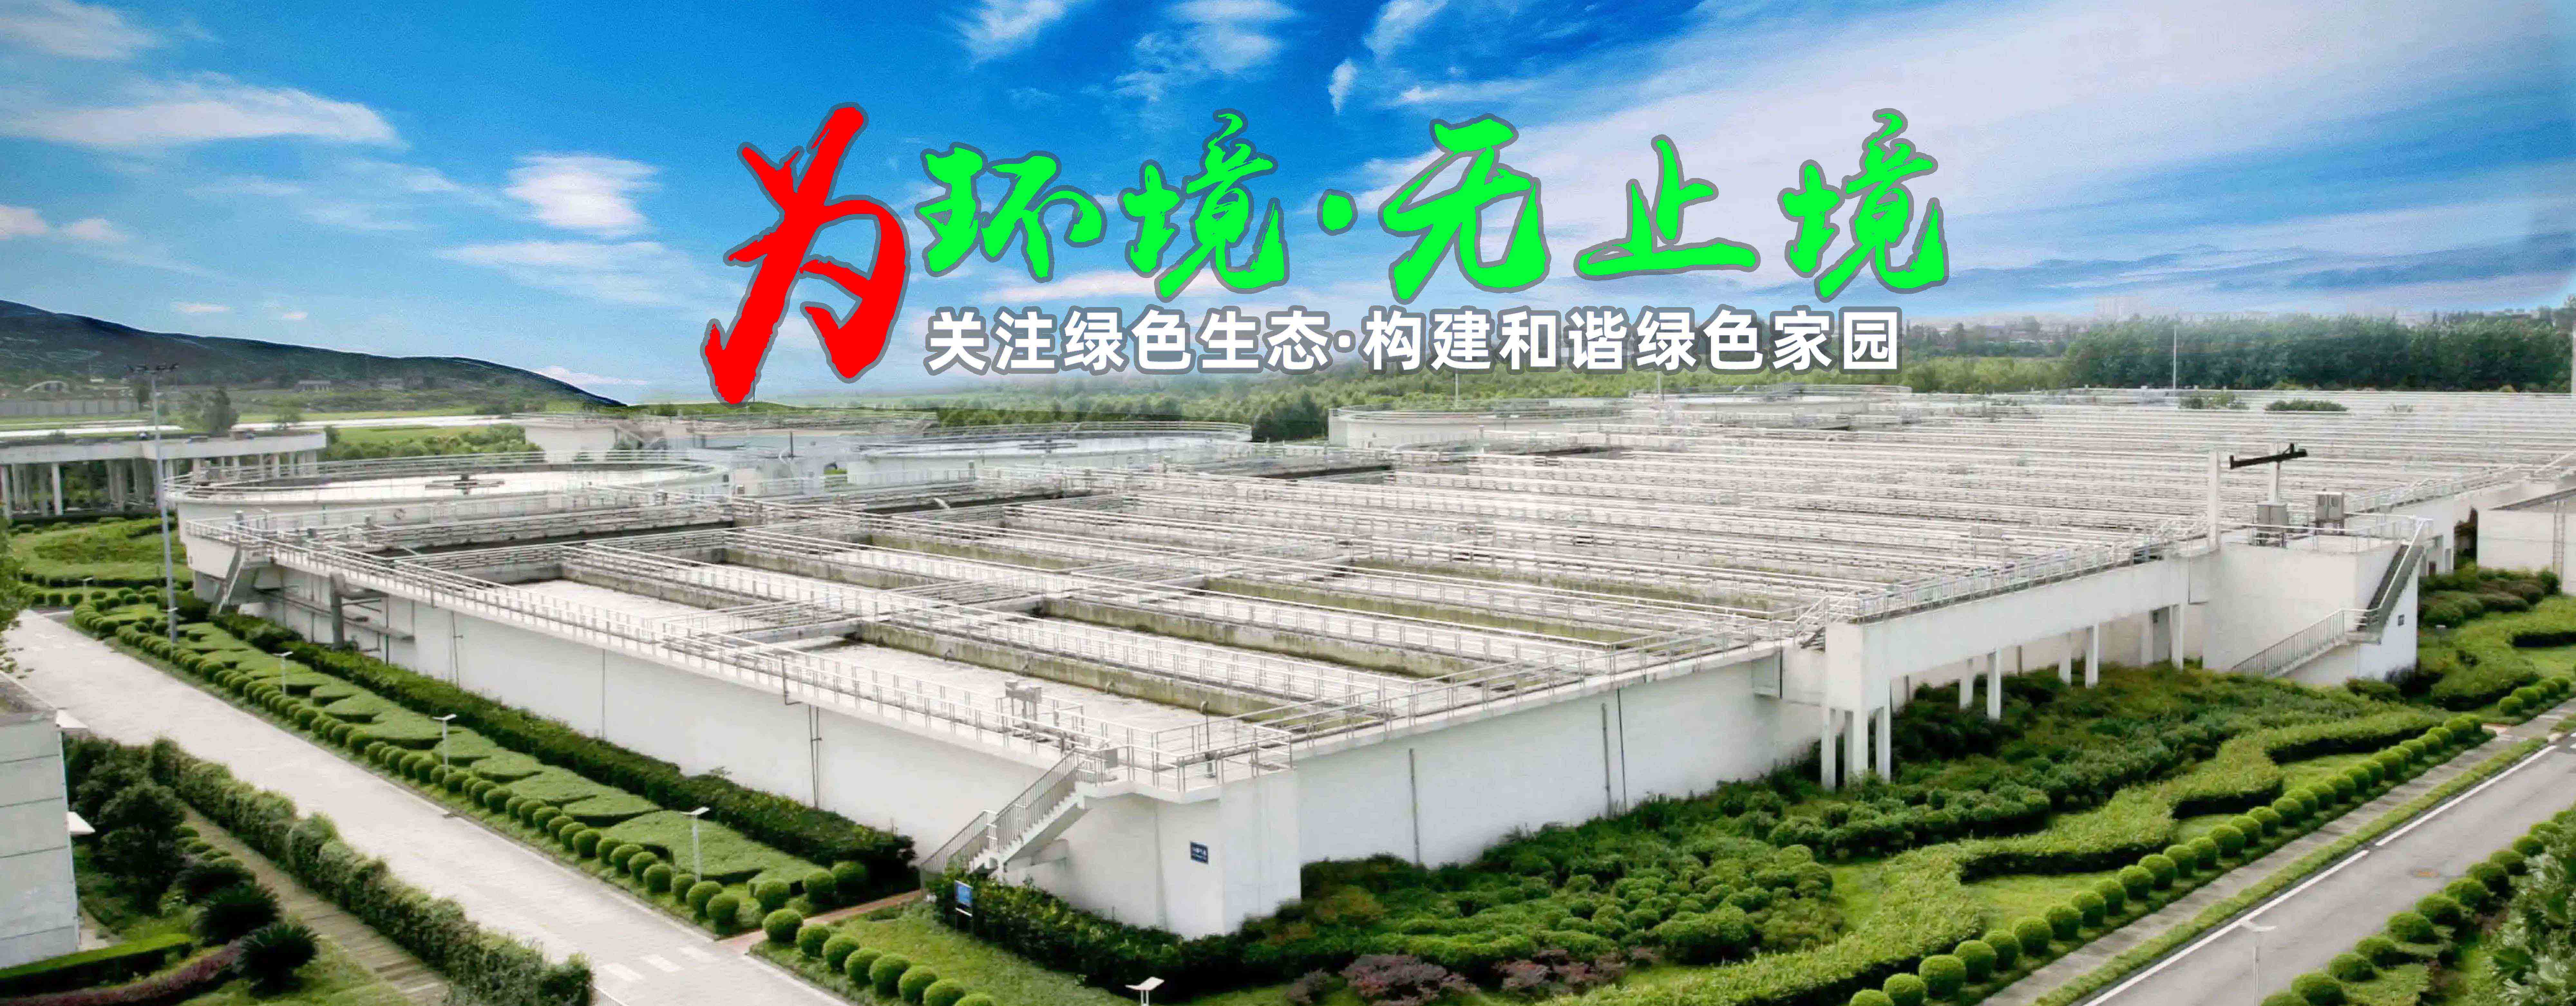 广州污水一体化处理设备优点-污水处理设备-广东星源环保